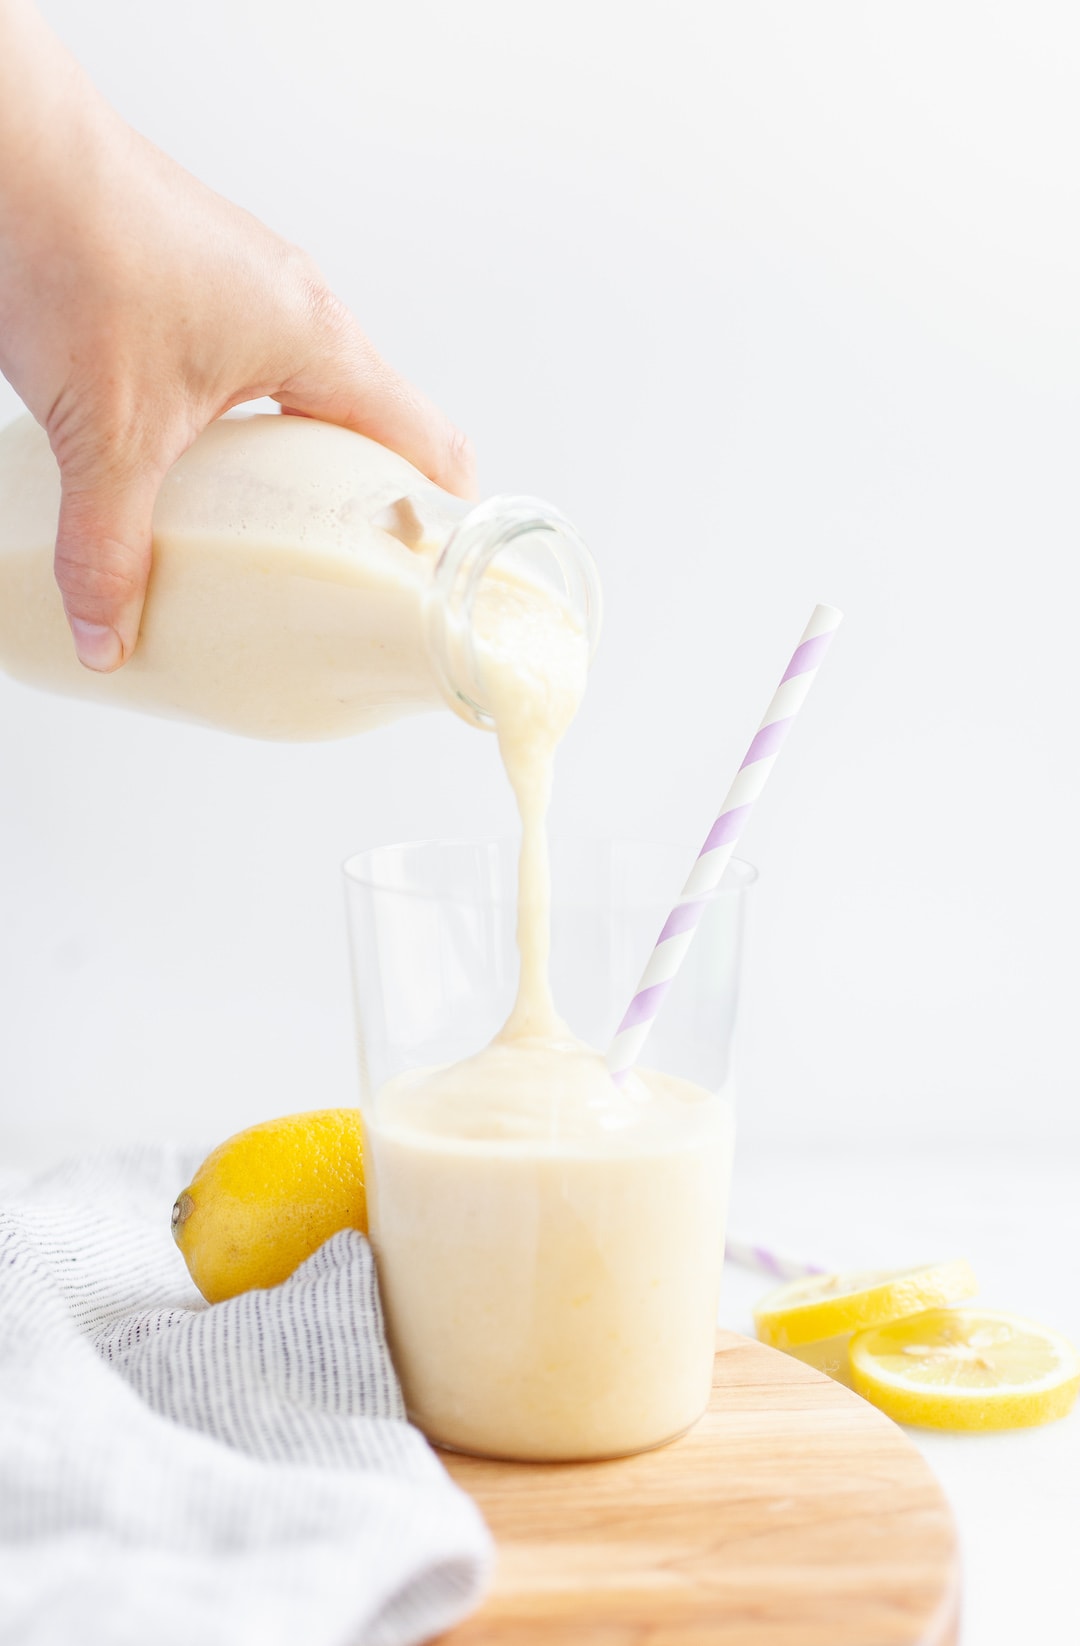 Pouring lemon banana peach smoothie into a glass